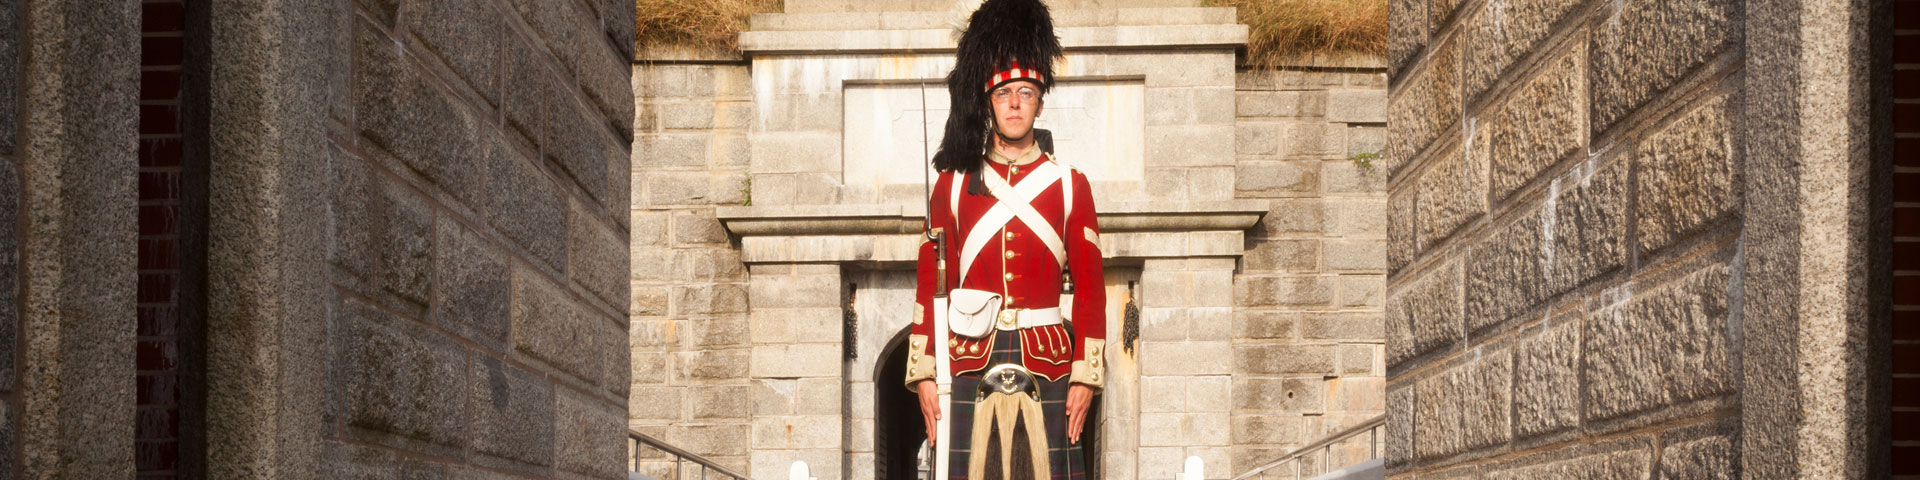 Un soldat en uniforme complet du 78e régiment des Highlanders tient une carabine près des murailles. 